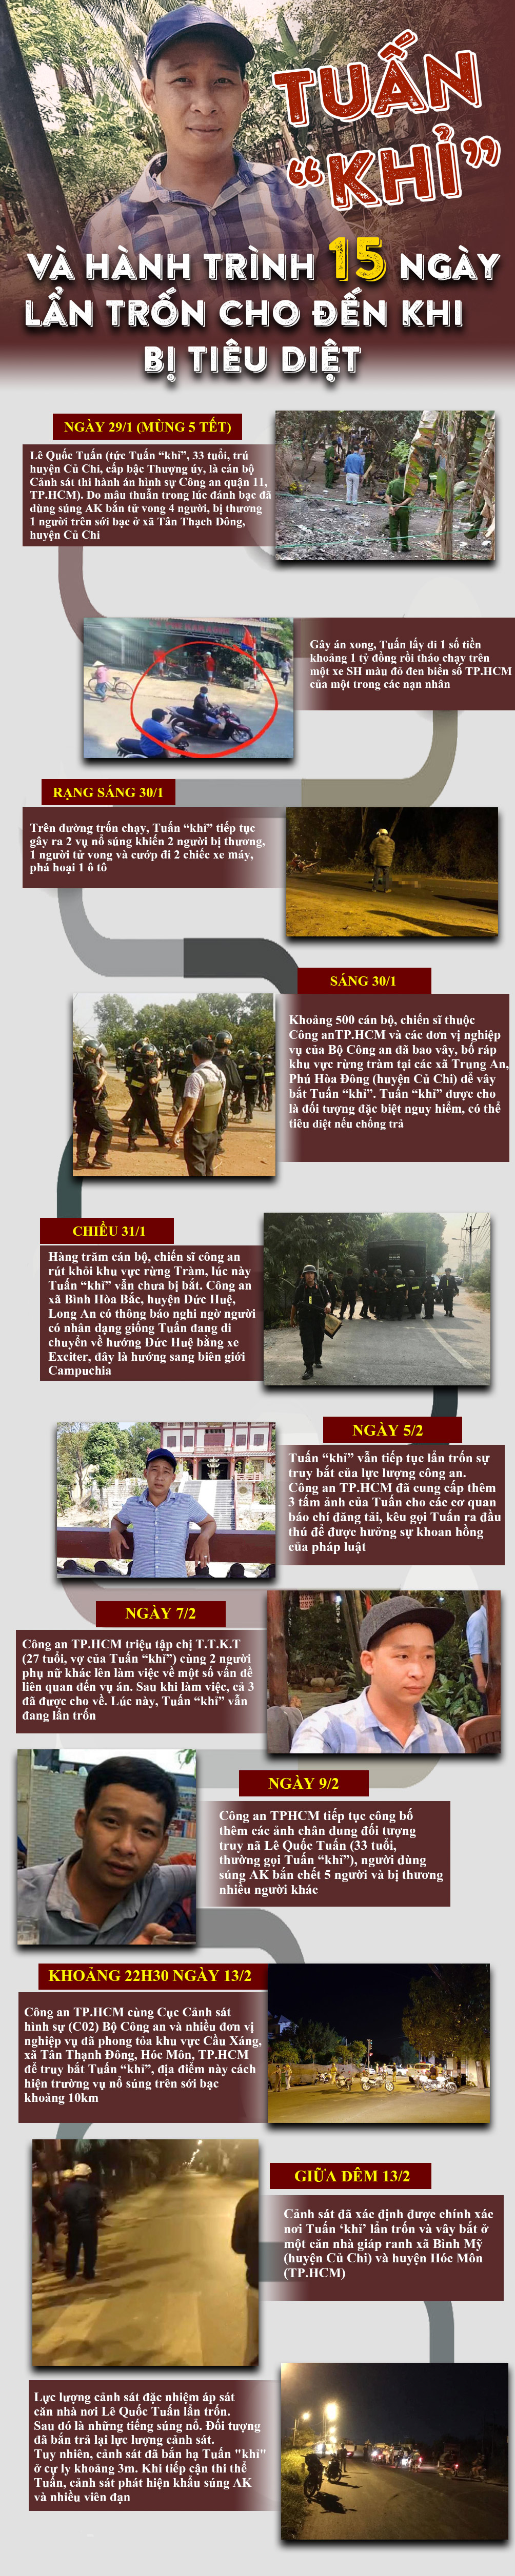 Công an TP Hồ Chí Minh tiếp tục cung cấp hình ảnh của đối tượng bị